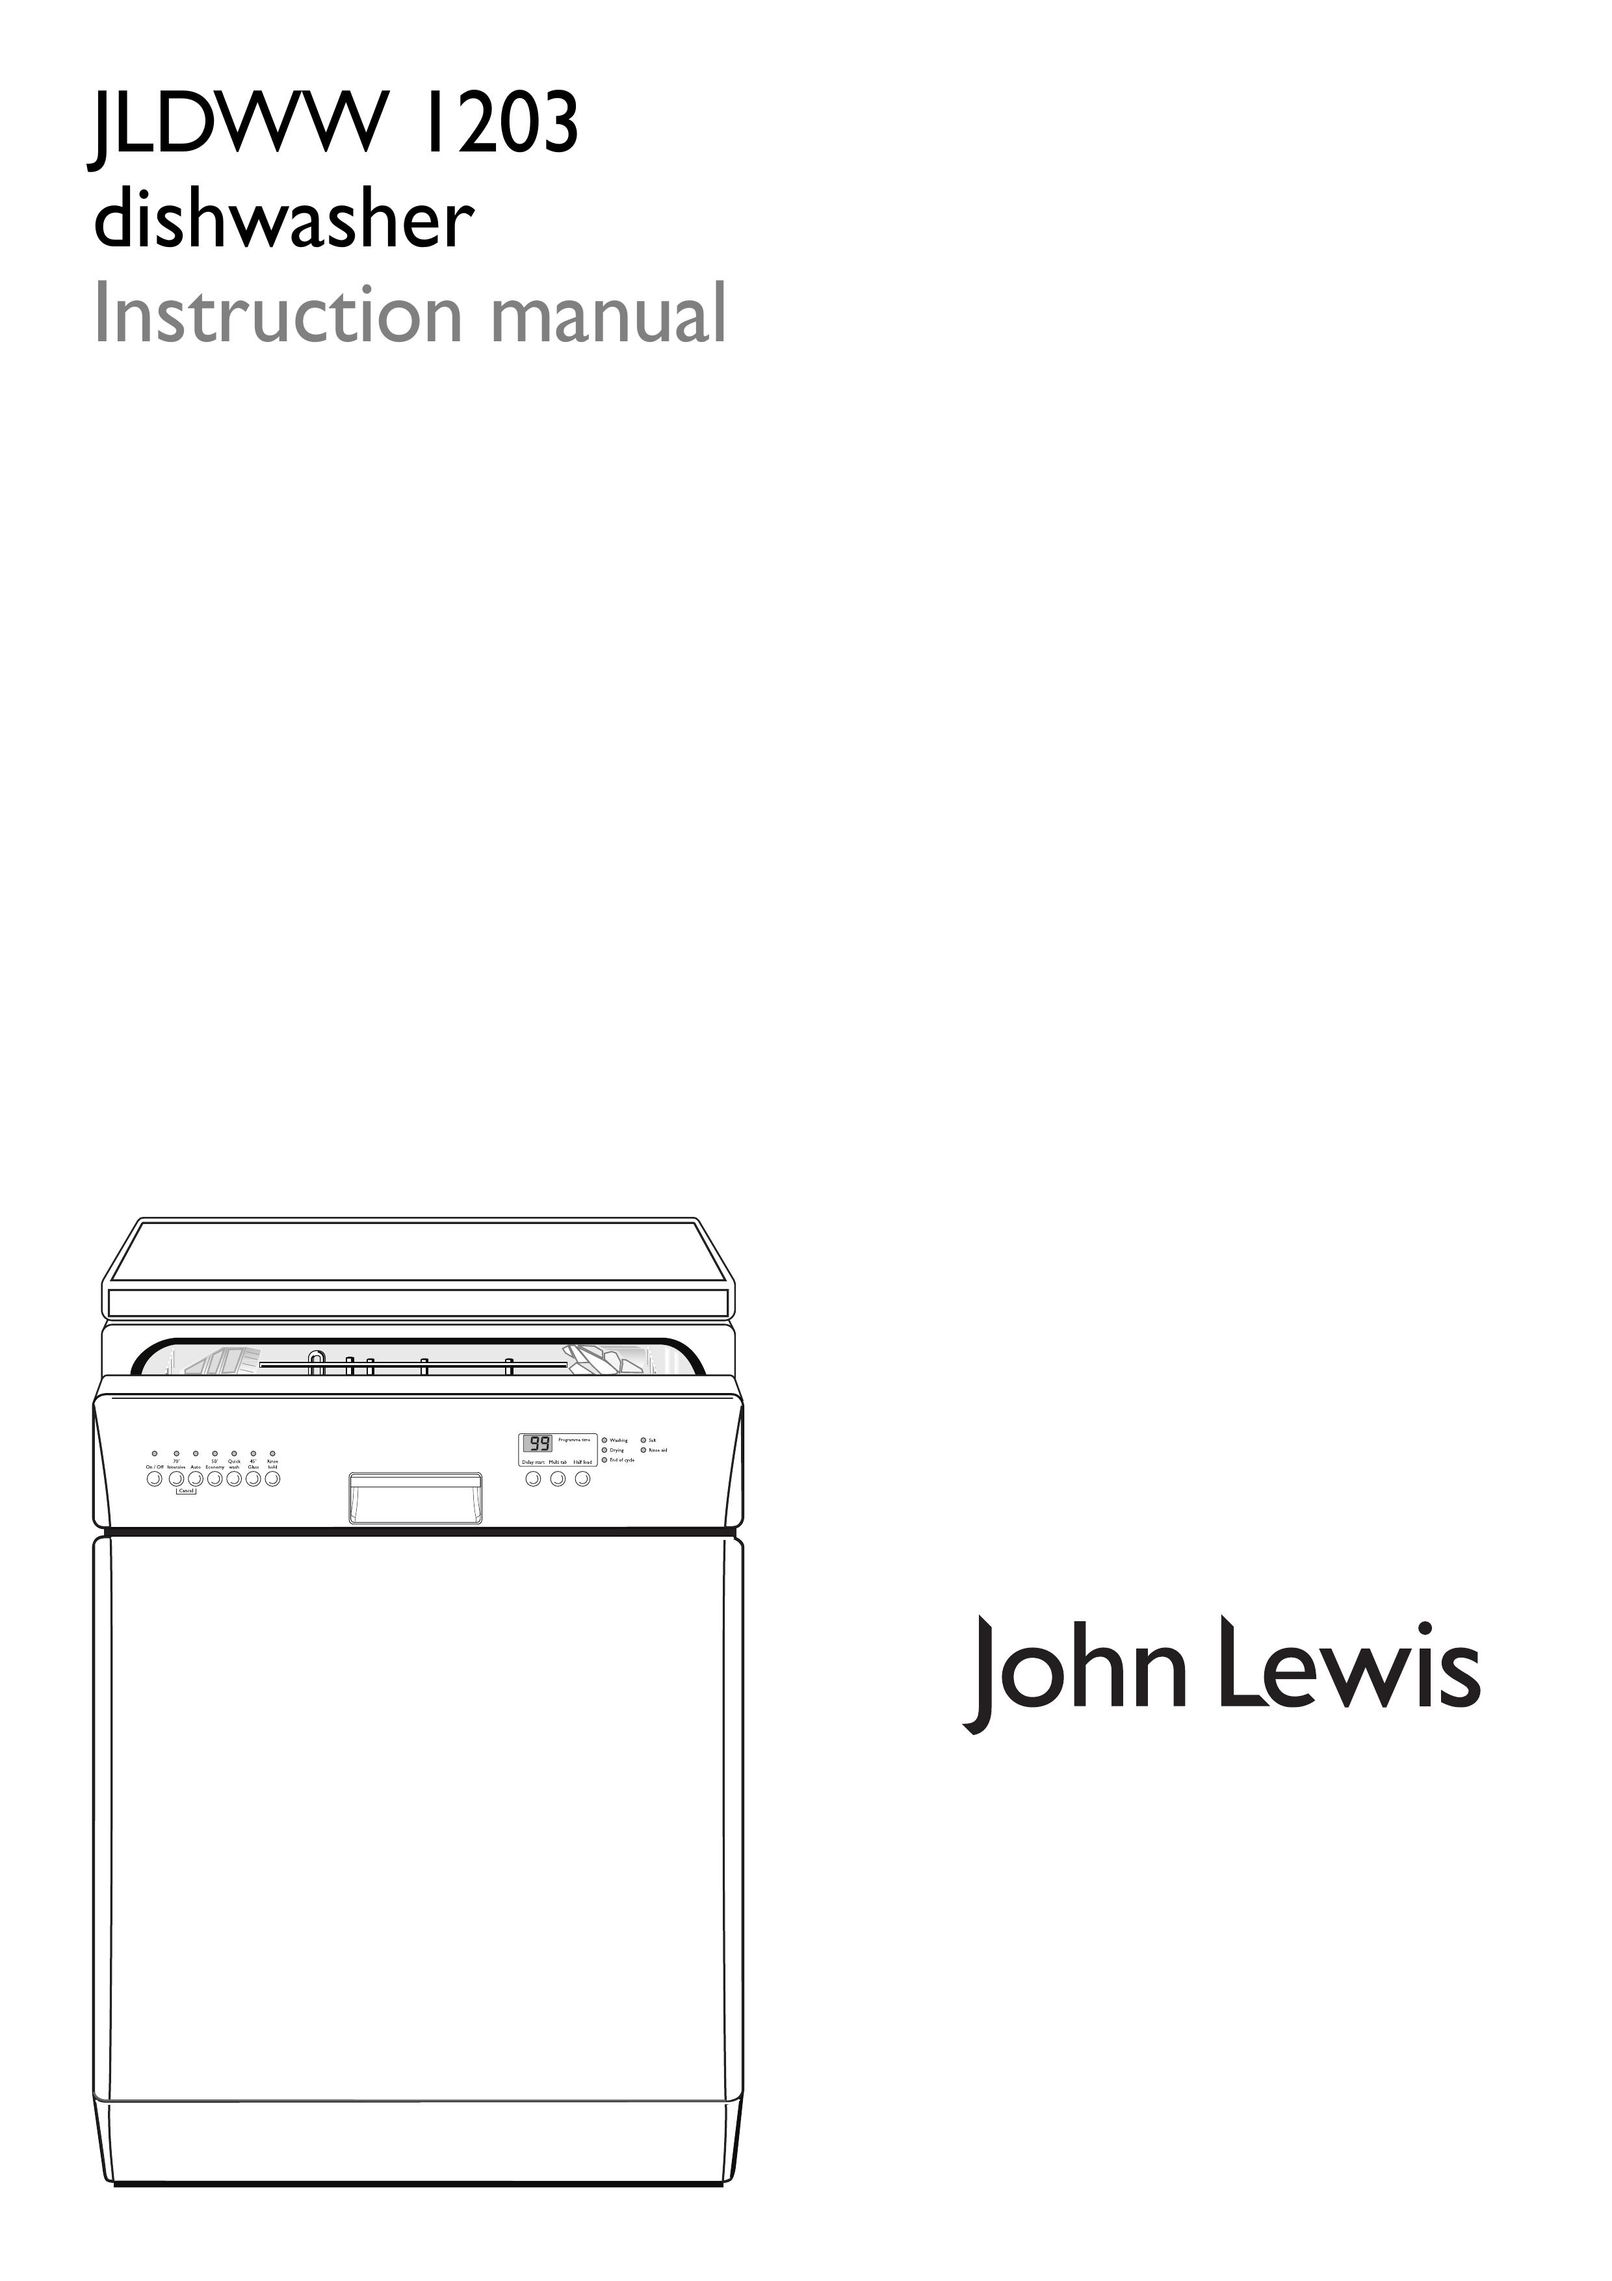 John Lewis JLDWW 1203 Dishwasher User Manual